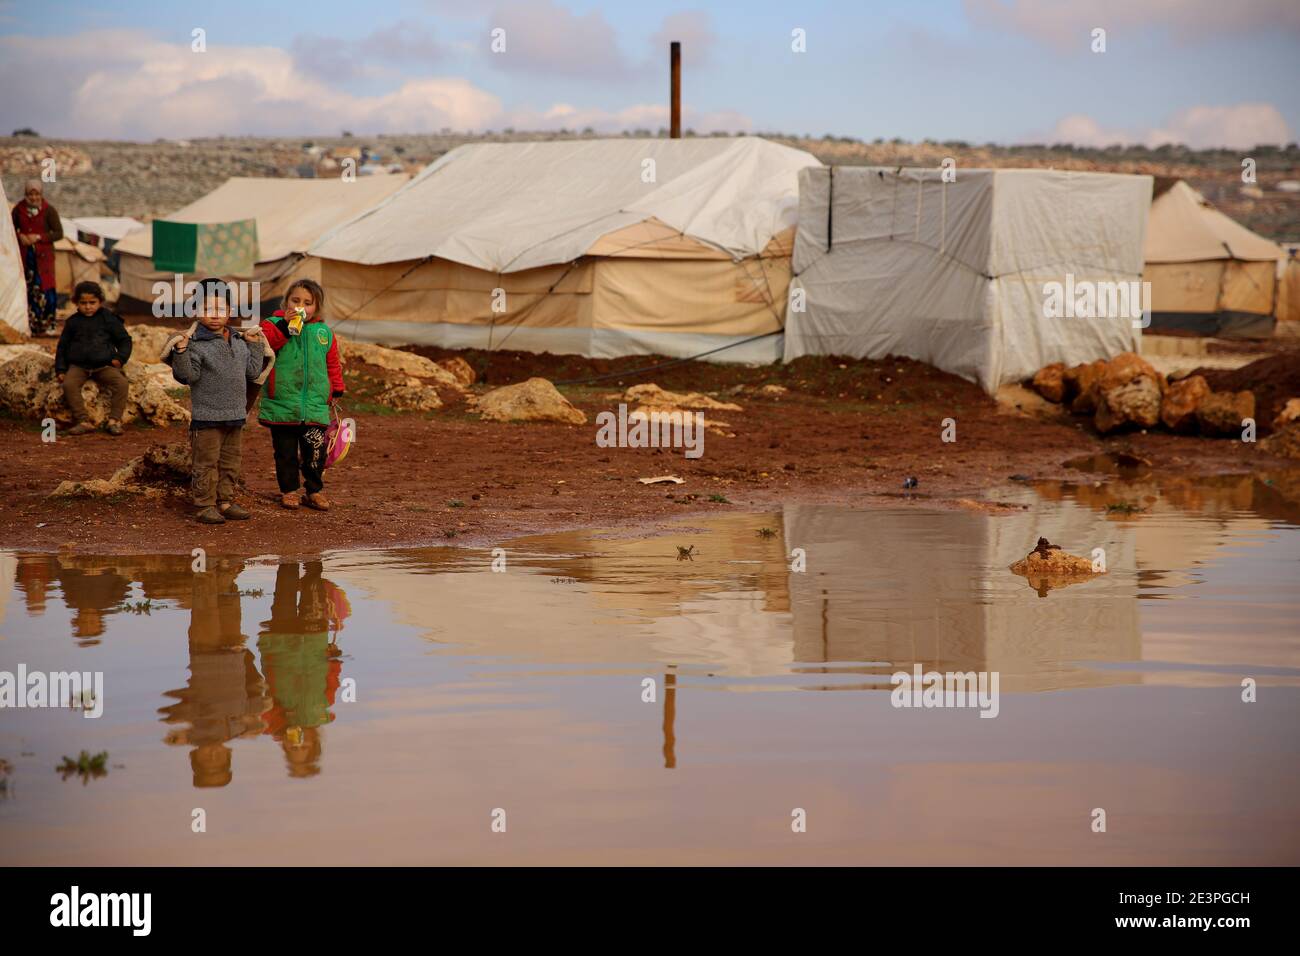 19 gennaio 2021: Idlib, Siria. 19 gennaio 2021. I bambini sono esposti alle dure condizioni meteorologiche e alle inondazioni in un campo per sfollati interni siriani intorno al villaggio di Killi nella provincia di Idlib. Le inondazioni hanno aggiunto ulteriori sfide alle famiglie sfollate nel nord-ovest della Siria che già si trovano ad affrontare temperature invernali che talvolta raggiungono sotto i zero gradi Celsius di notte. Molte famiglie nel campo erano fuggite dagli attacchi delle forze governative siriane e del loro alleato russo, e potrebbero non essere disposte a tornare nelle loro città perché le loro case e villaggi sono stati distrutti o Foto Stock